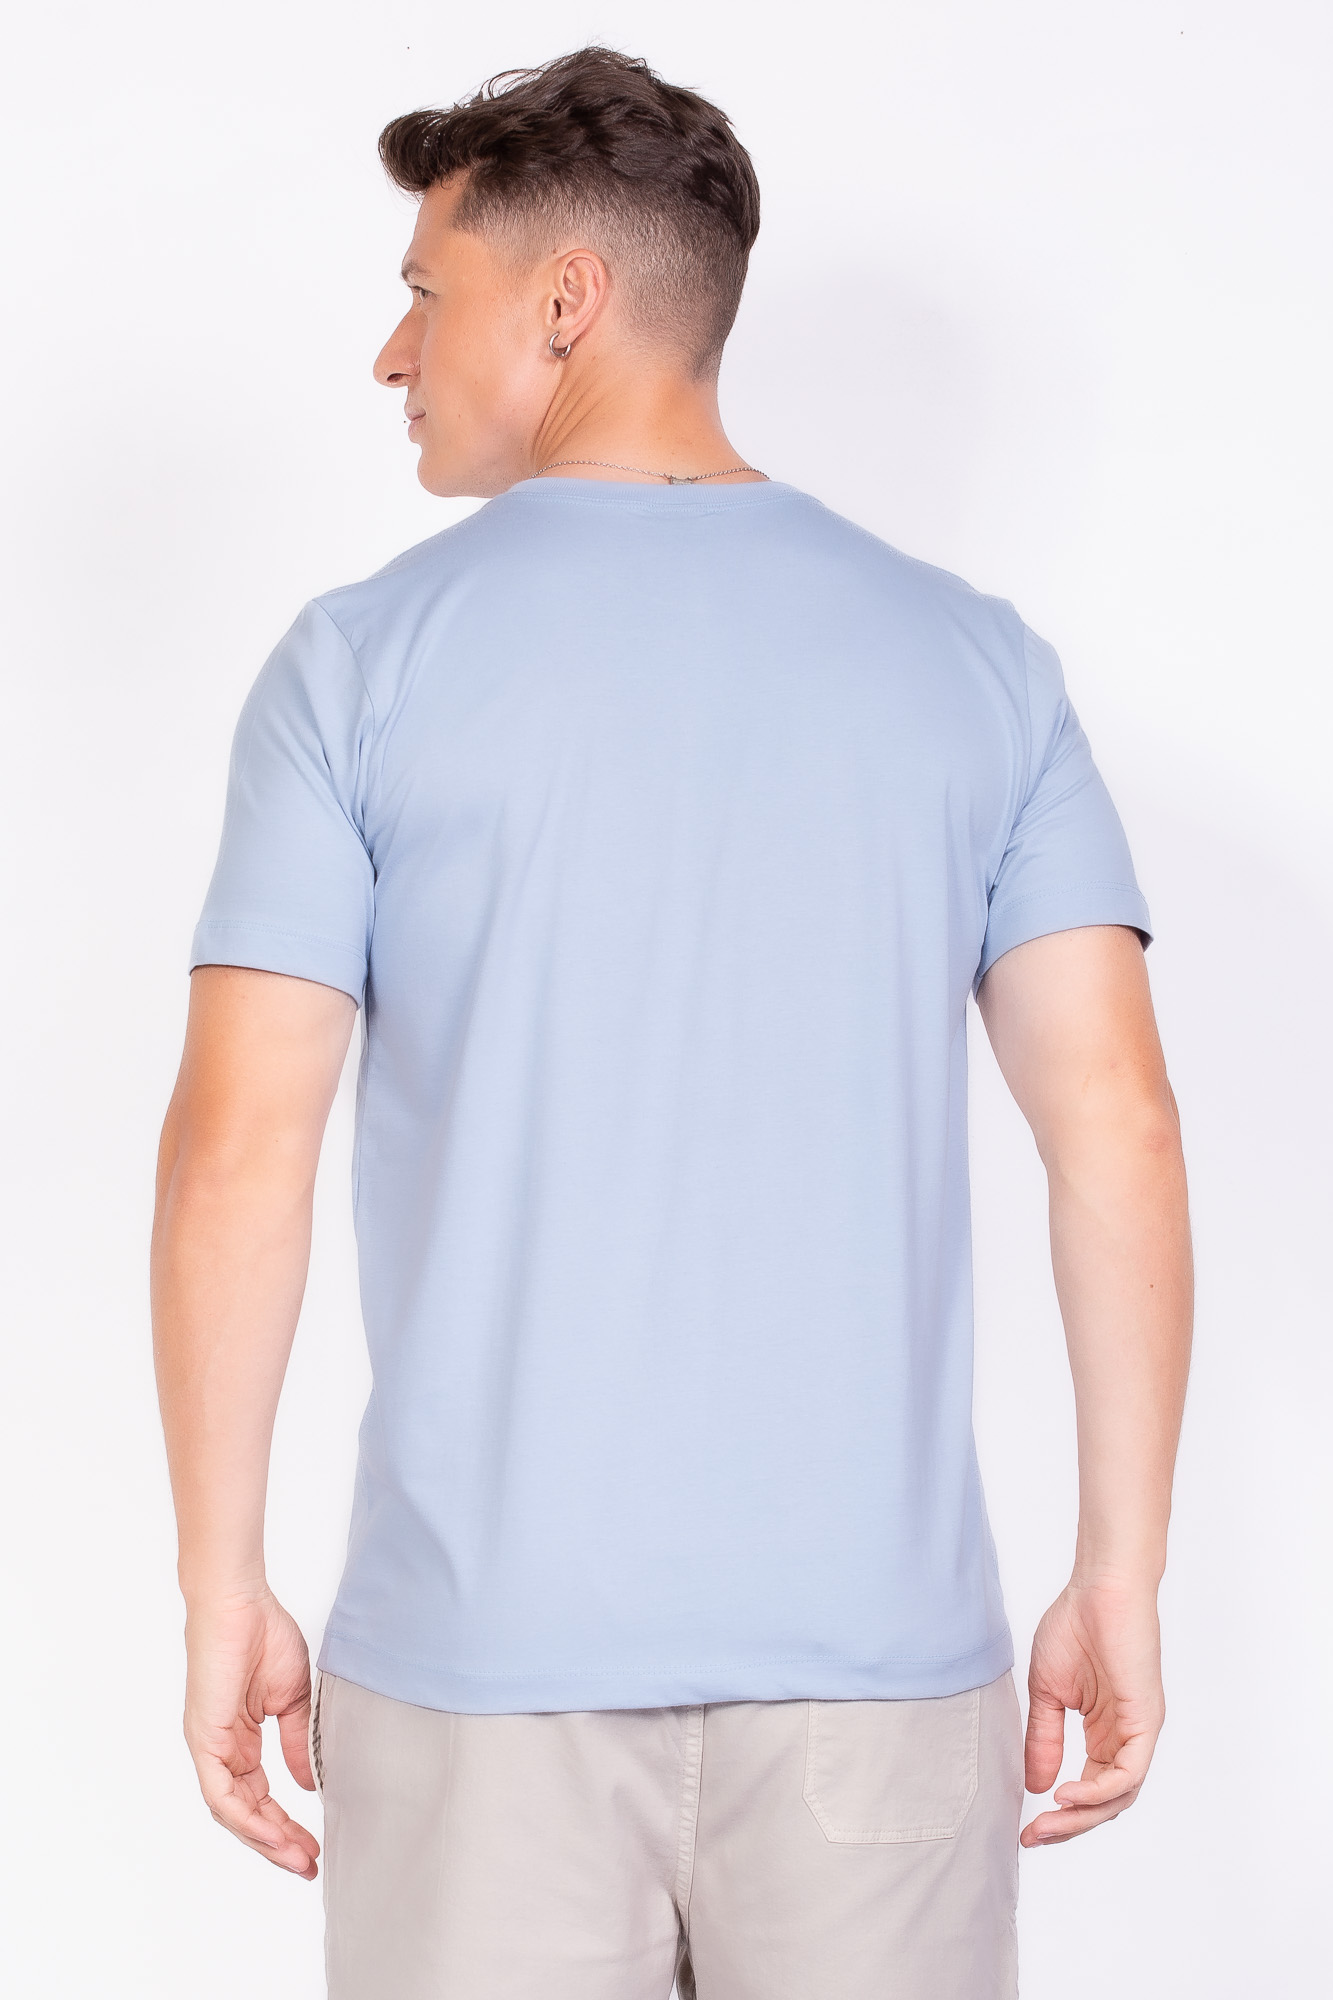 Camiseta Básica 100% algodão azul claro